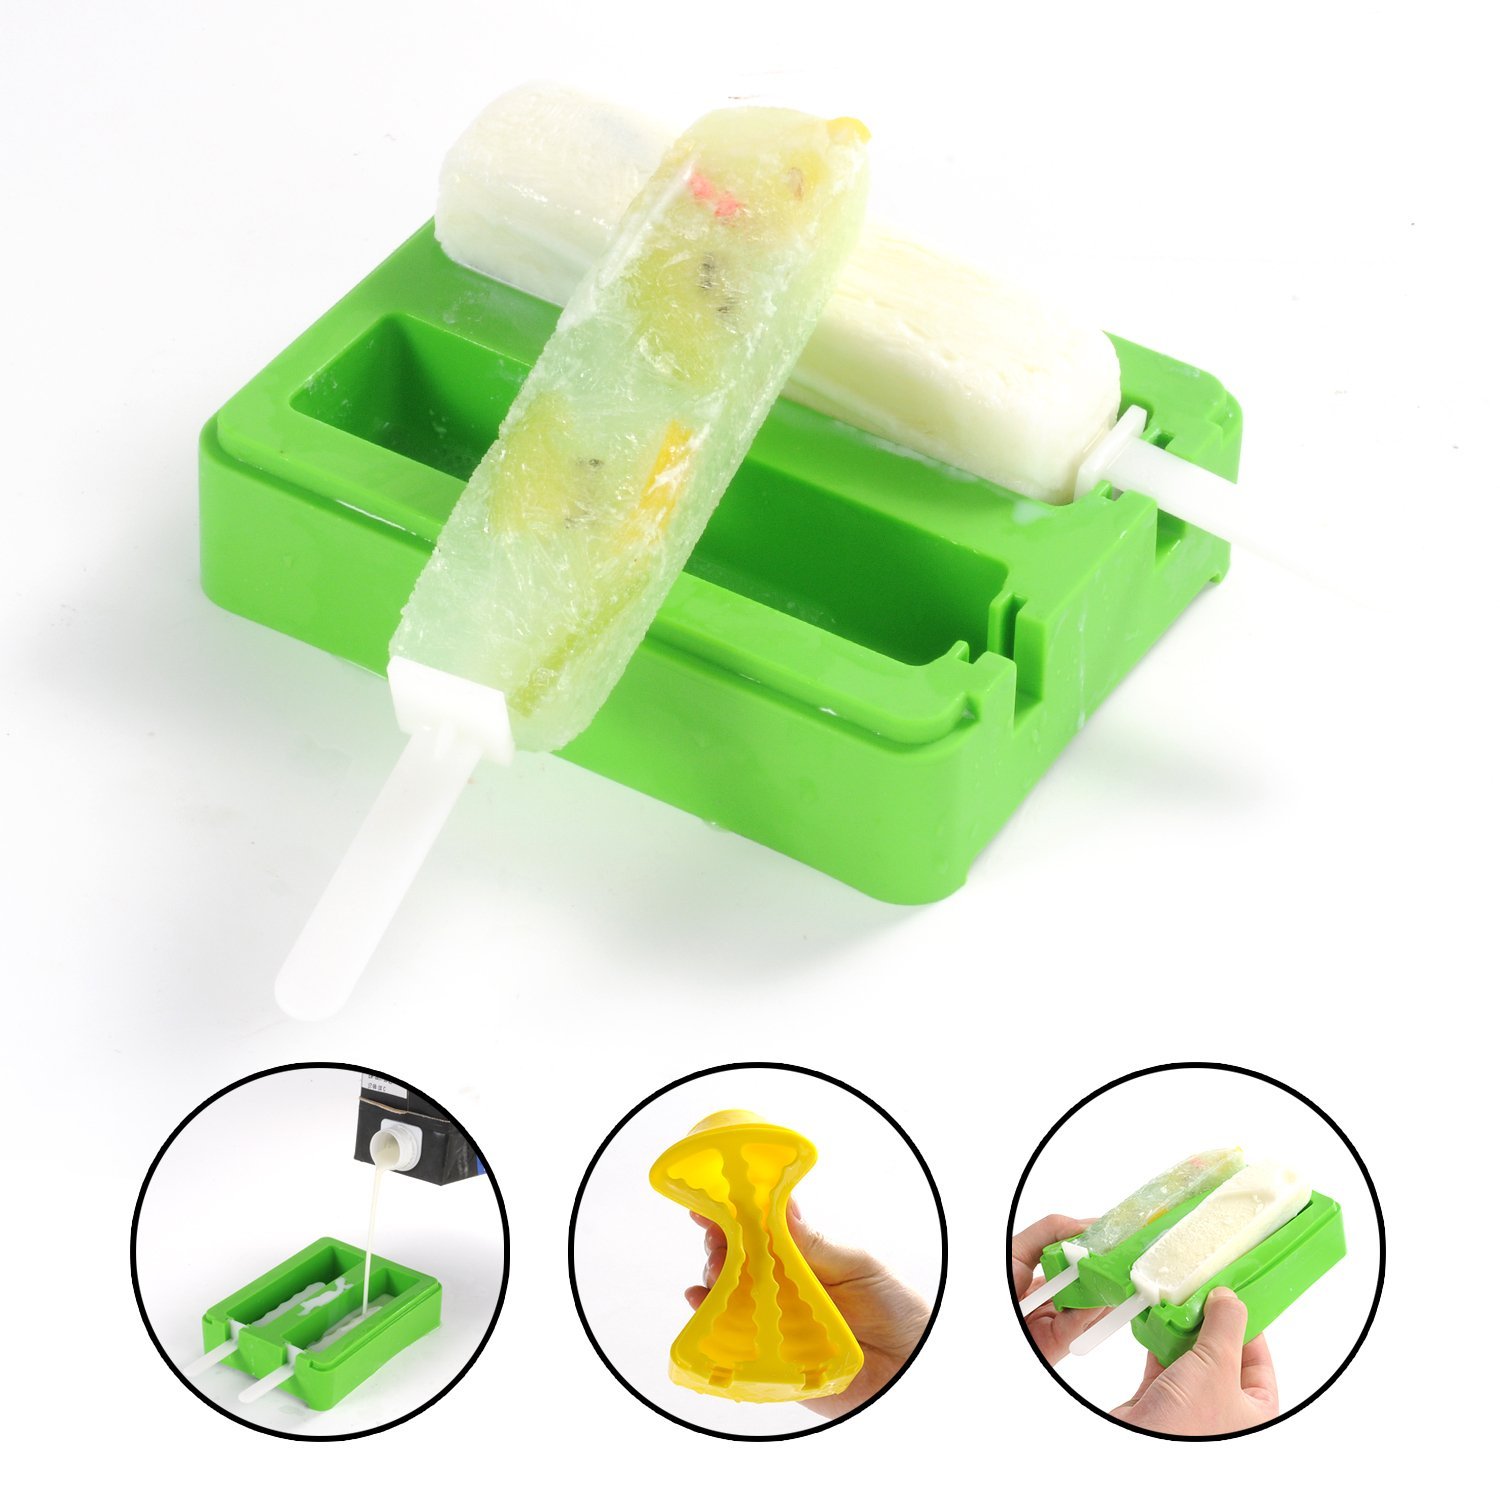 BPA Free Silicone Popsicle Molds, силиконовый препарат для поппицила Ice Pop Формы с крышками